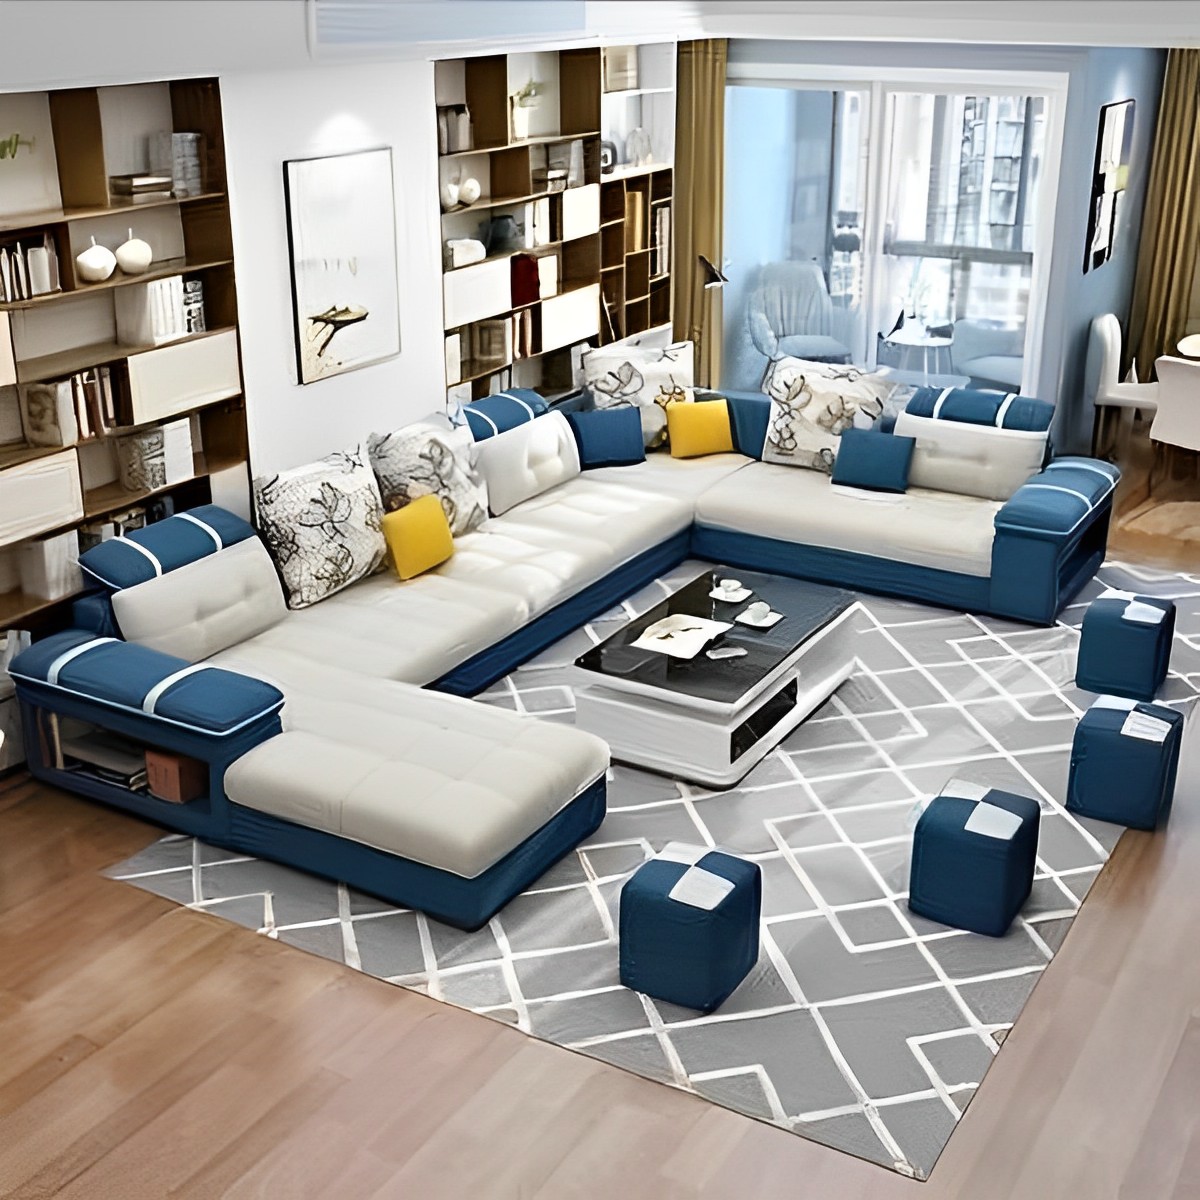 sofa design for living room.